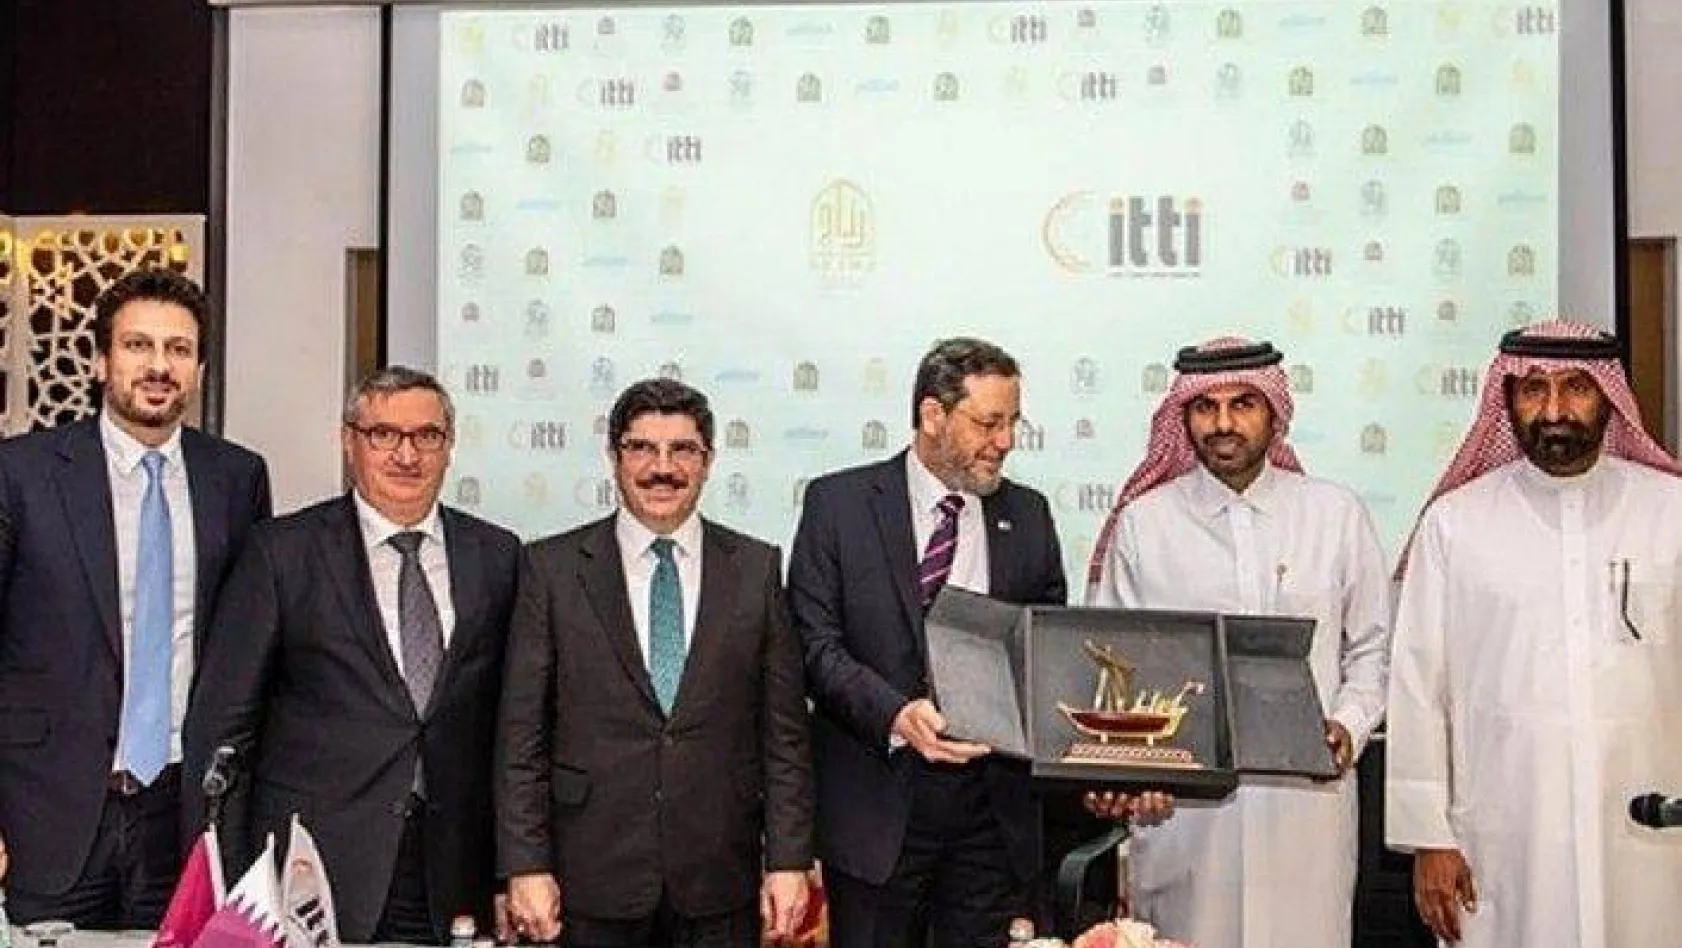 Katarlı zincirin yeni oteli Silivri'ye